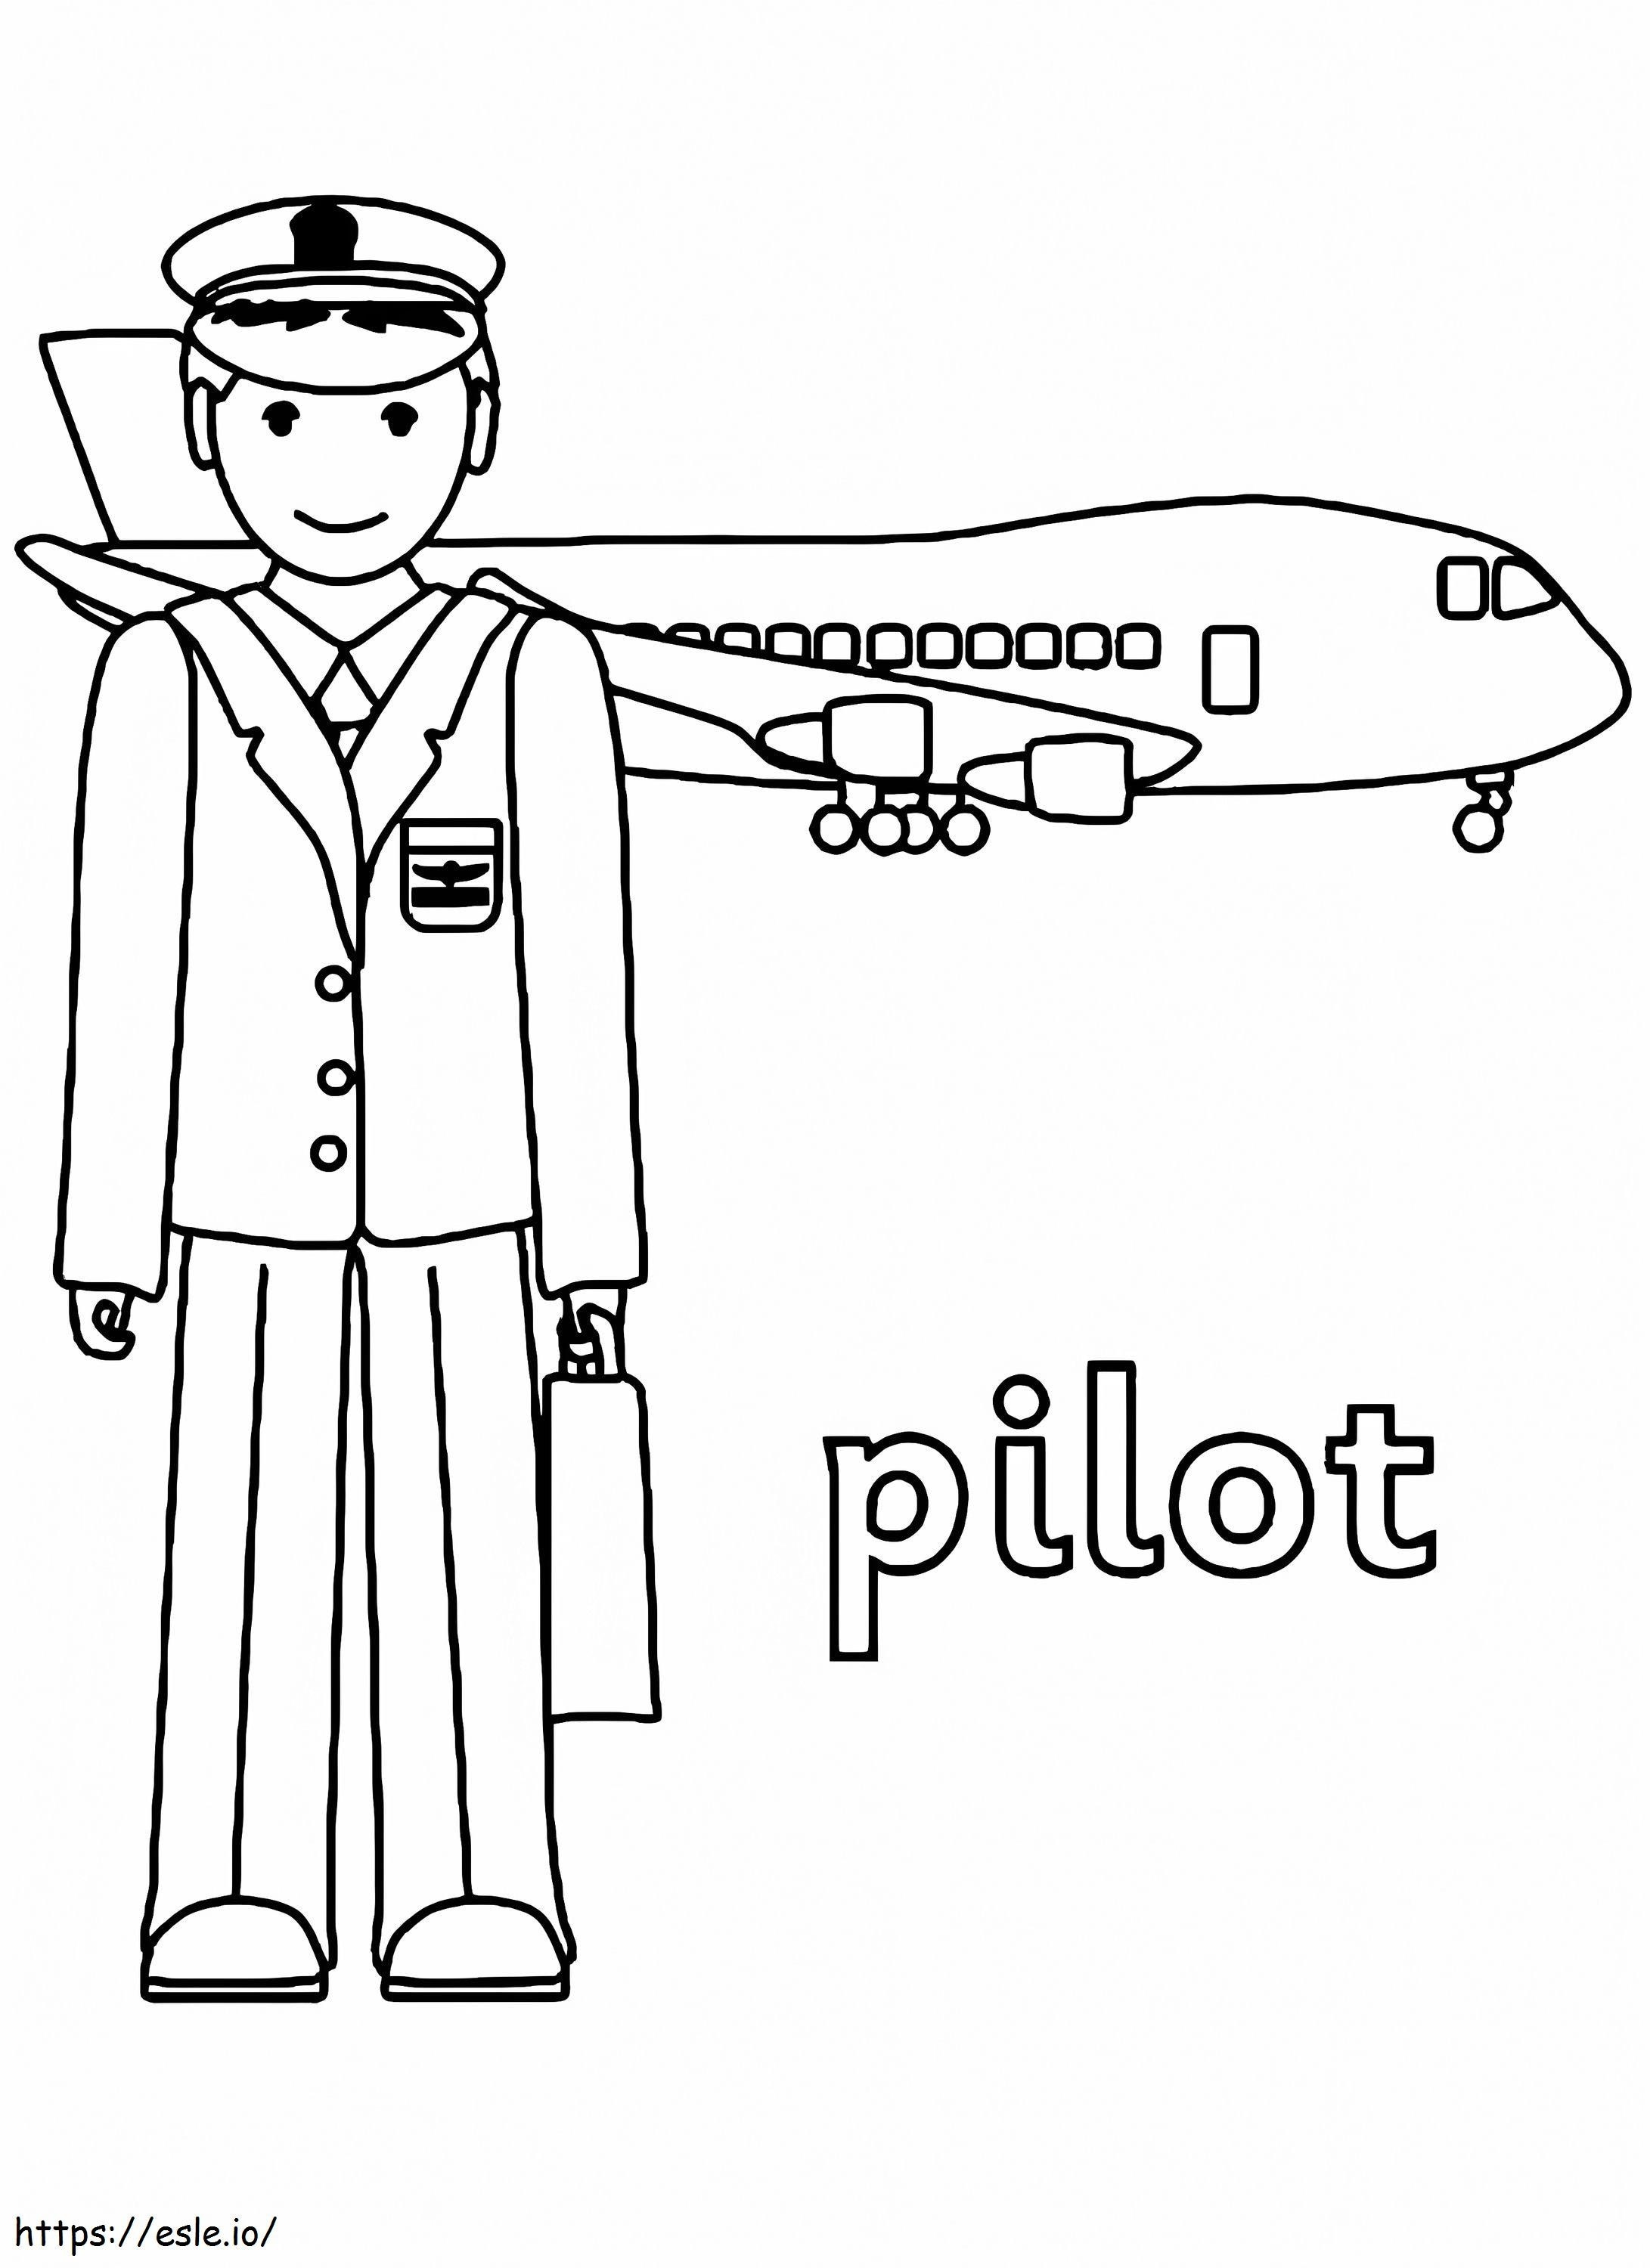 Pilot 9 coloring page